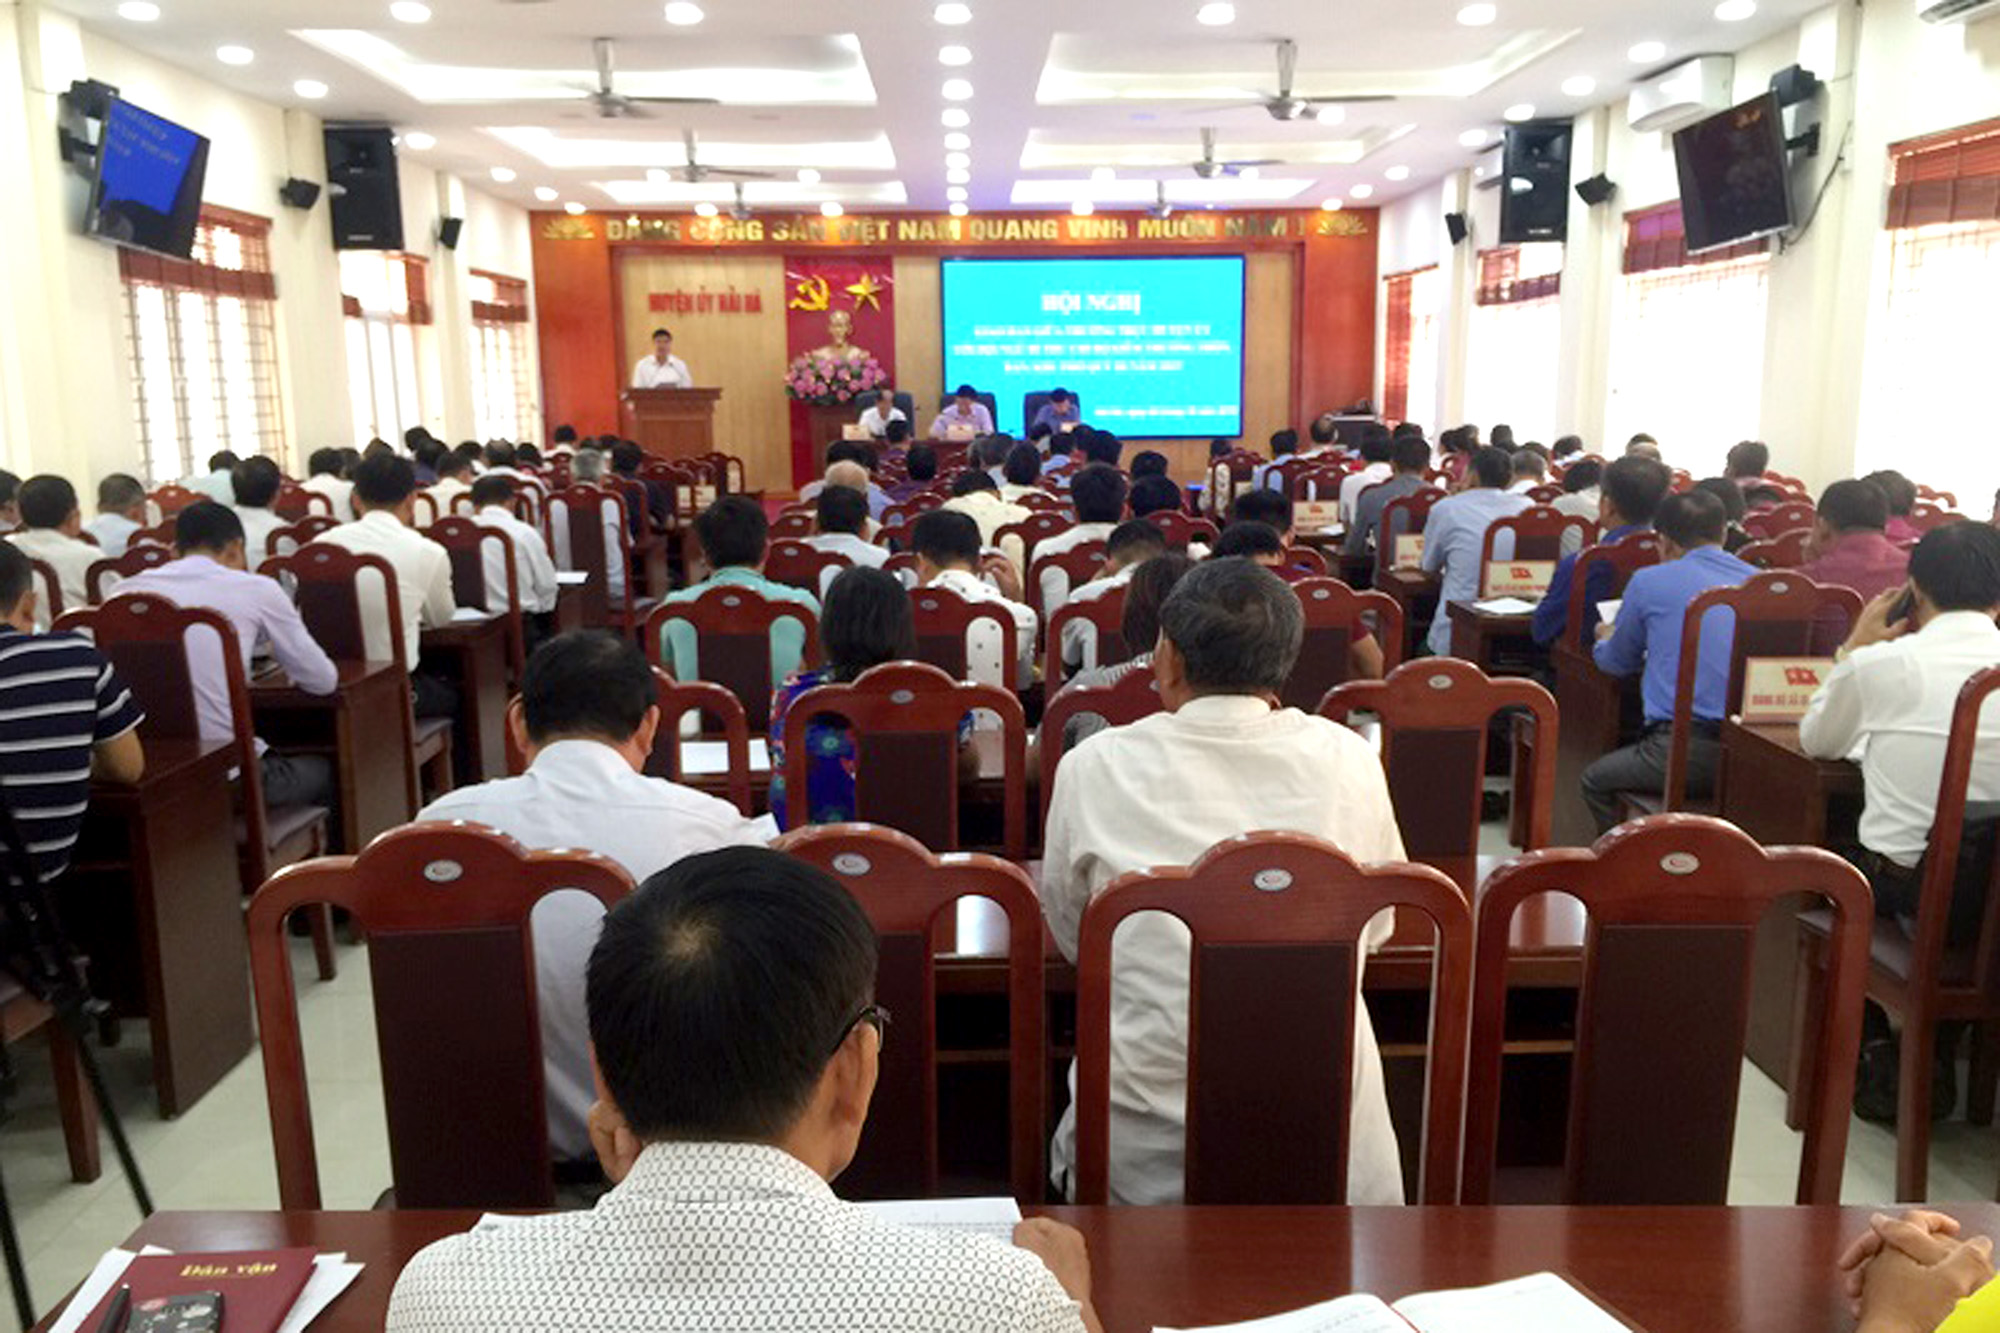 Huyện Hải Hà tổ chức hội nghị giao ban với Bí thư chi bộ đồng thời là trưởng thôn, khu phố, tháng 10/2019. Ảnh: Thái Hà (Trung tâm TT&VH huyện)